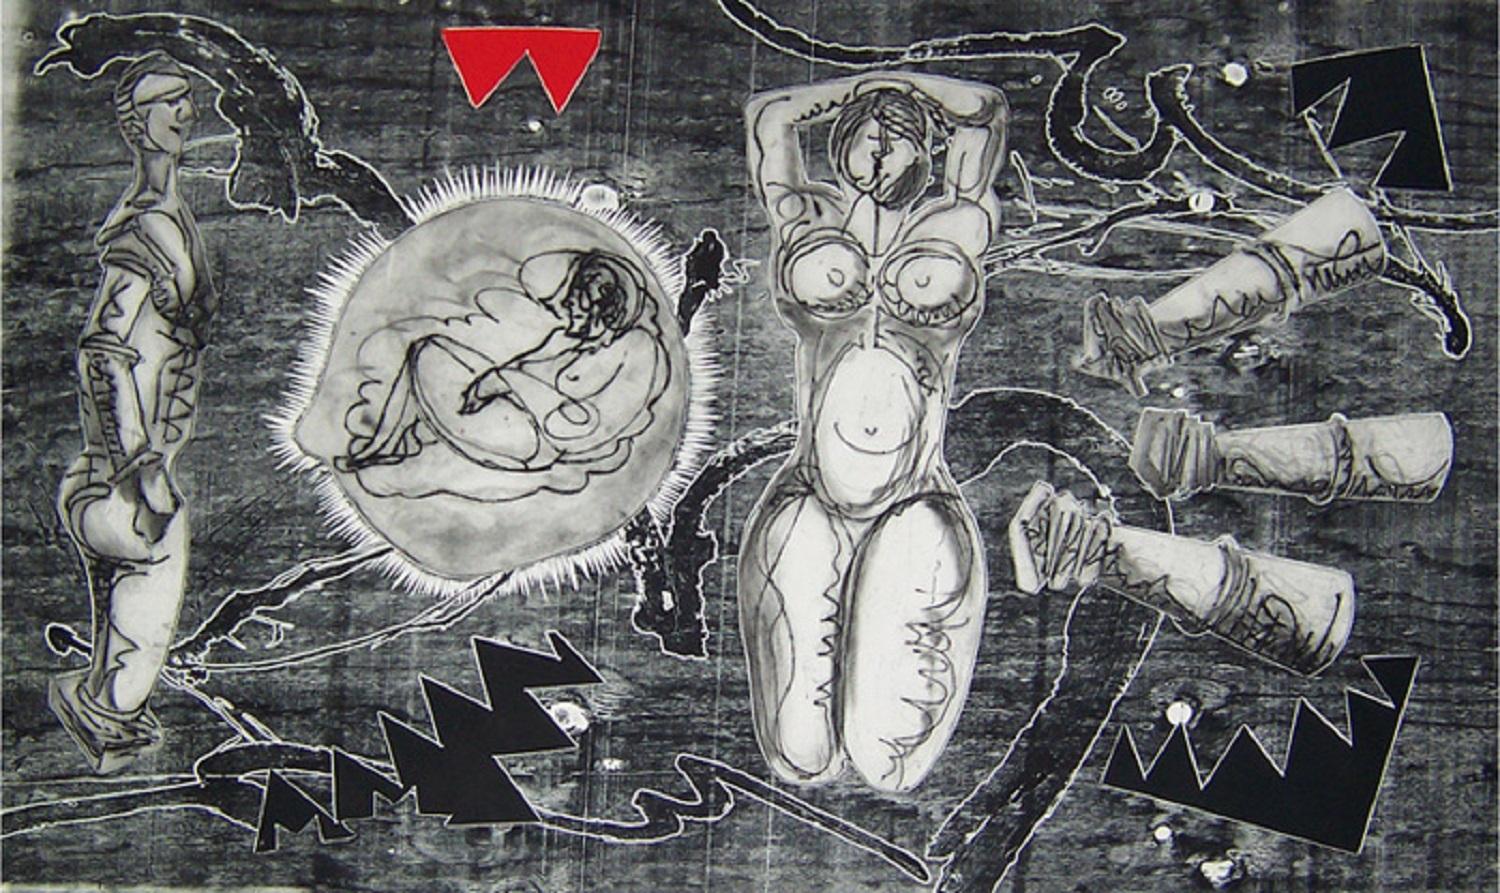 Luis Miguel Valdés ¨Paisaje antes de la batalla¨, 2003, Woodcut, 45.3x70.9 in